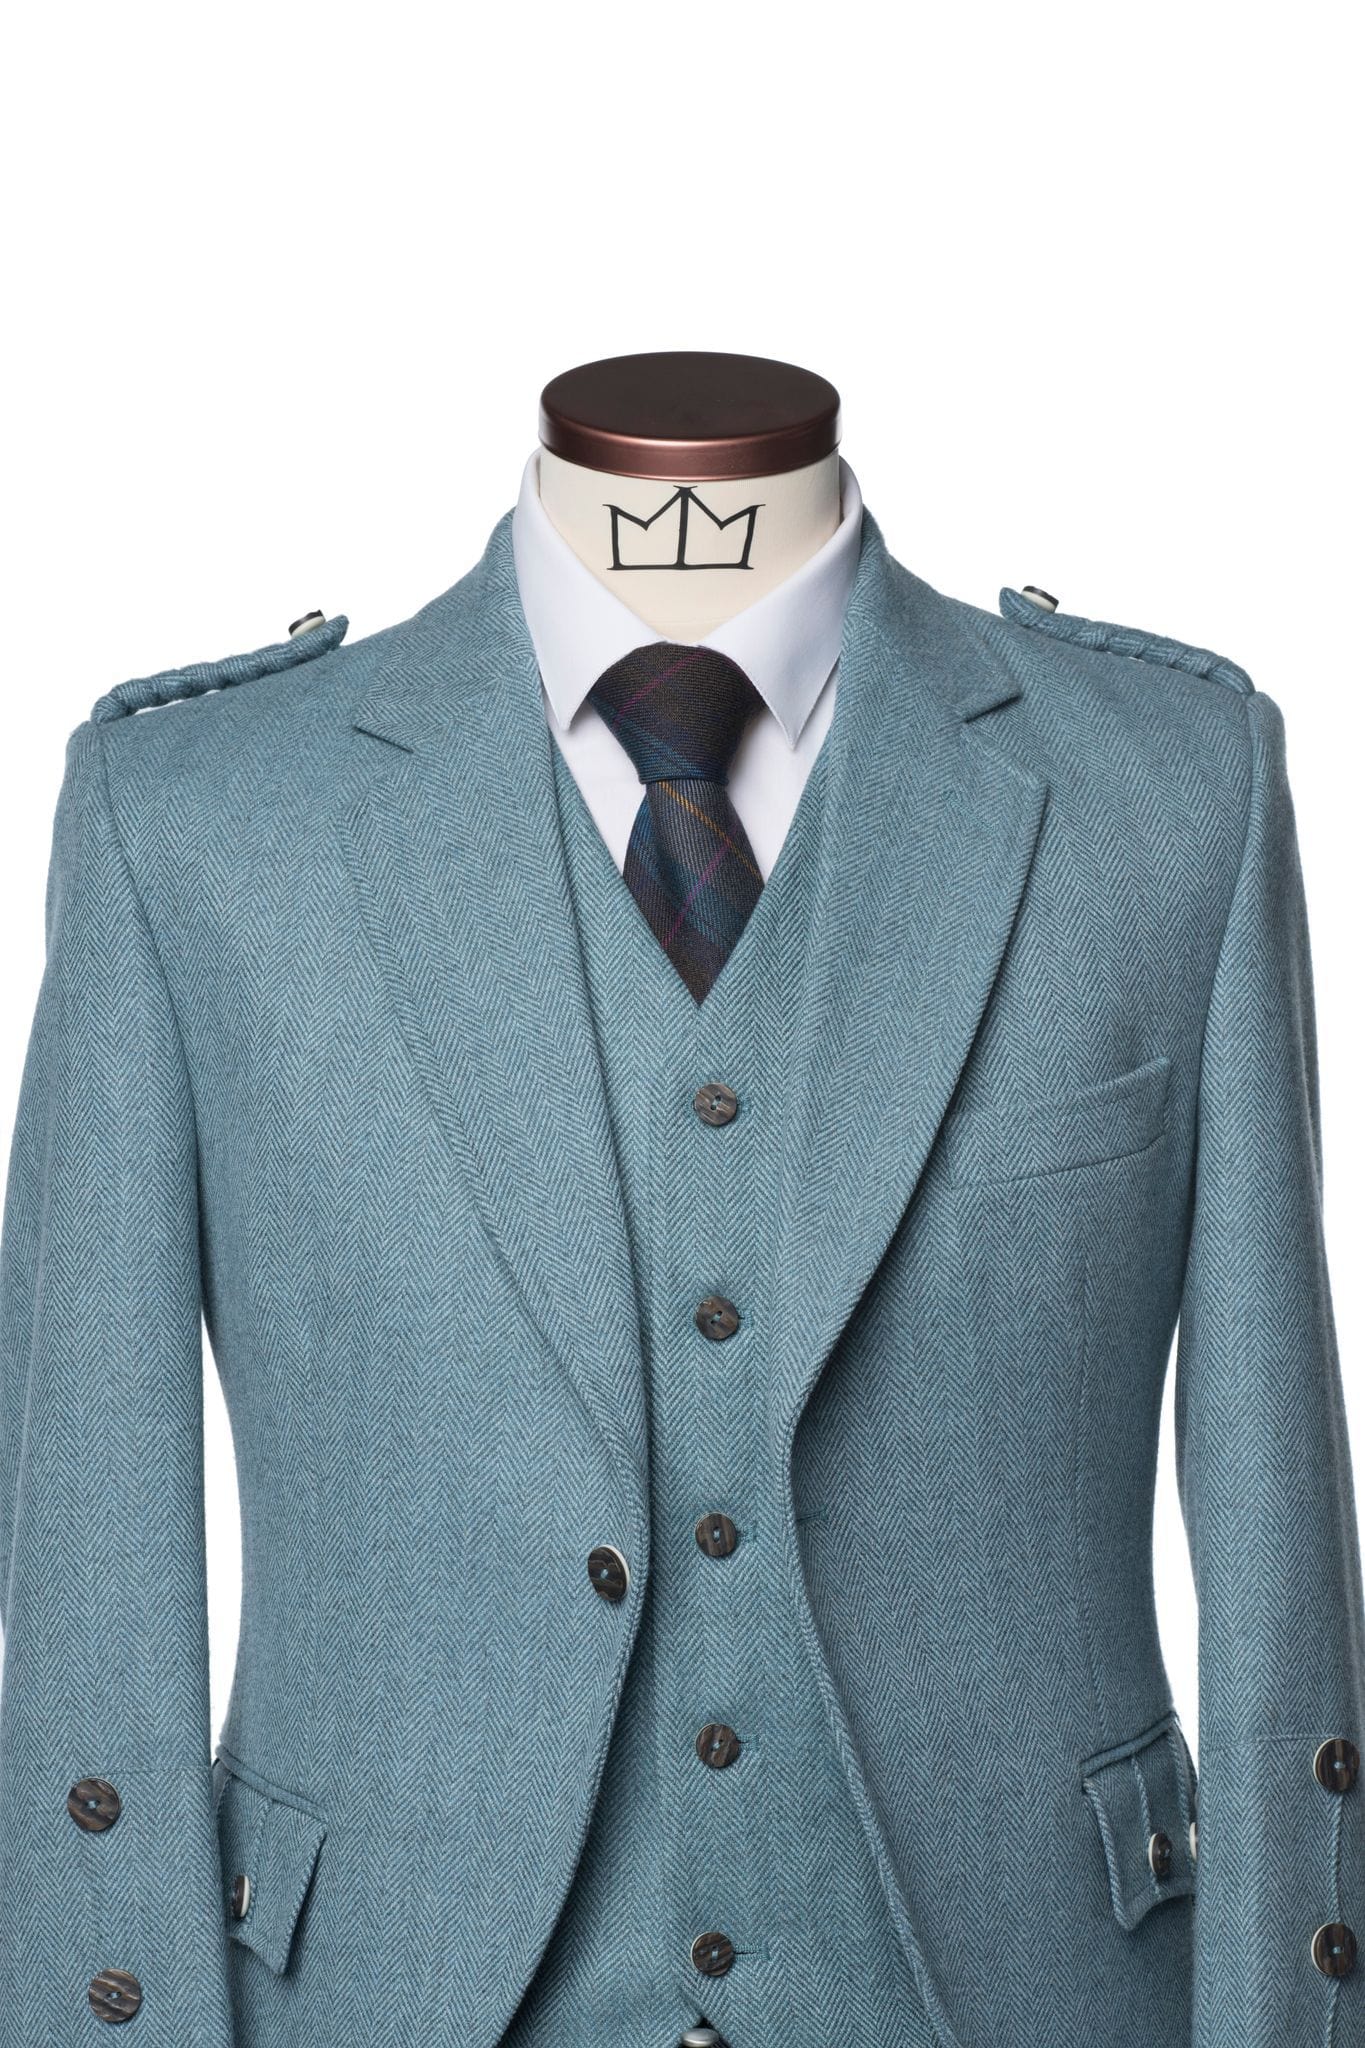 Lovat Blue Tweed Kilt Jacket and Waistcoat - MacGregor and MacDuff